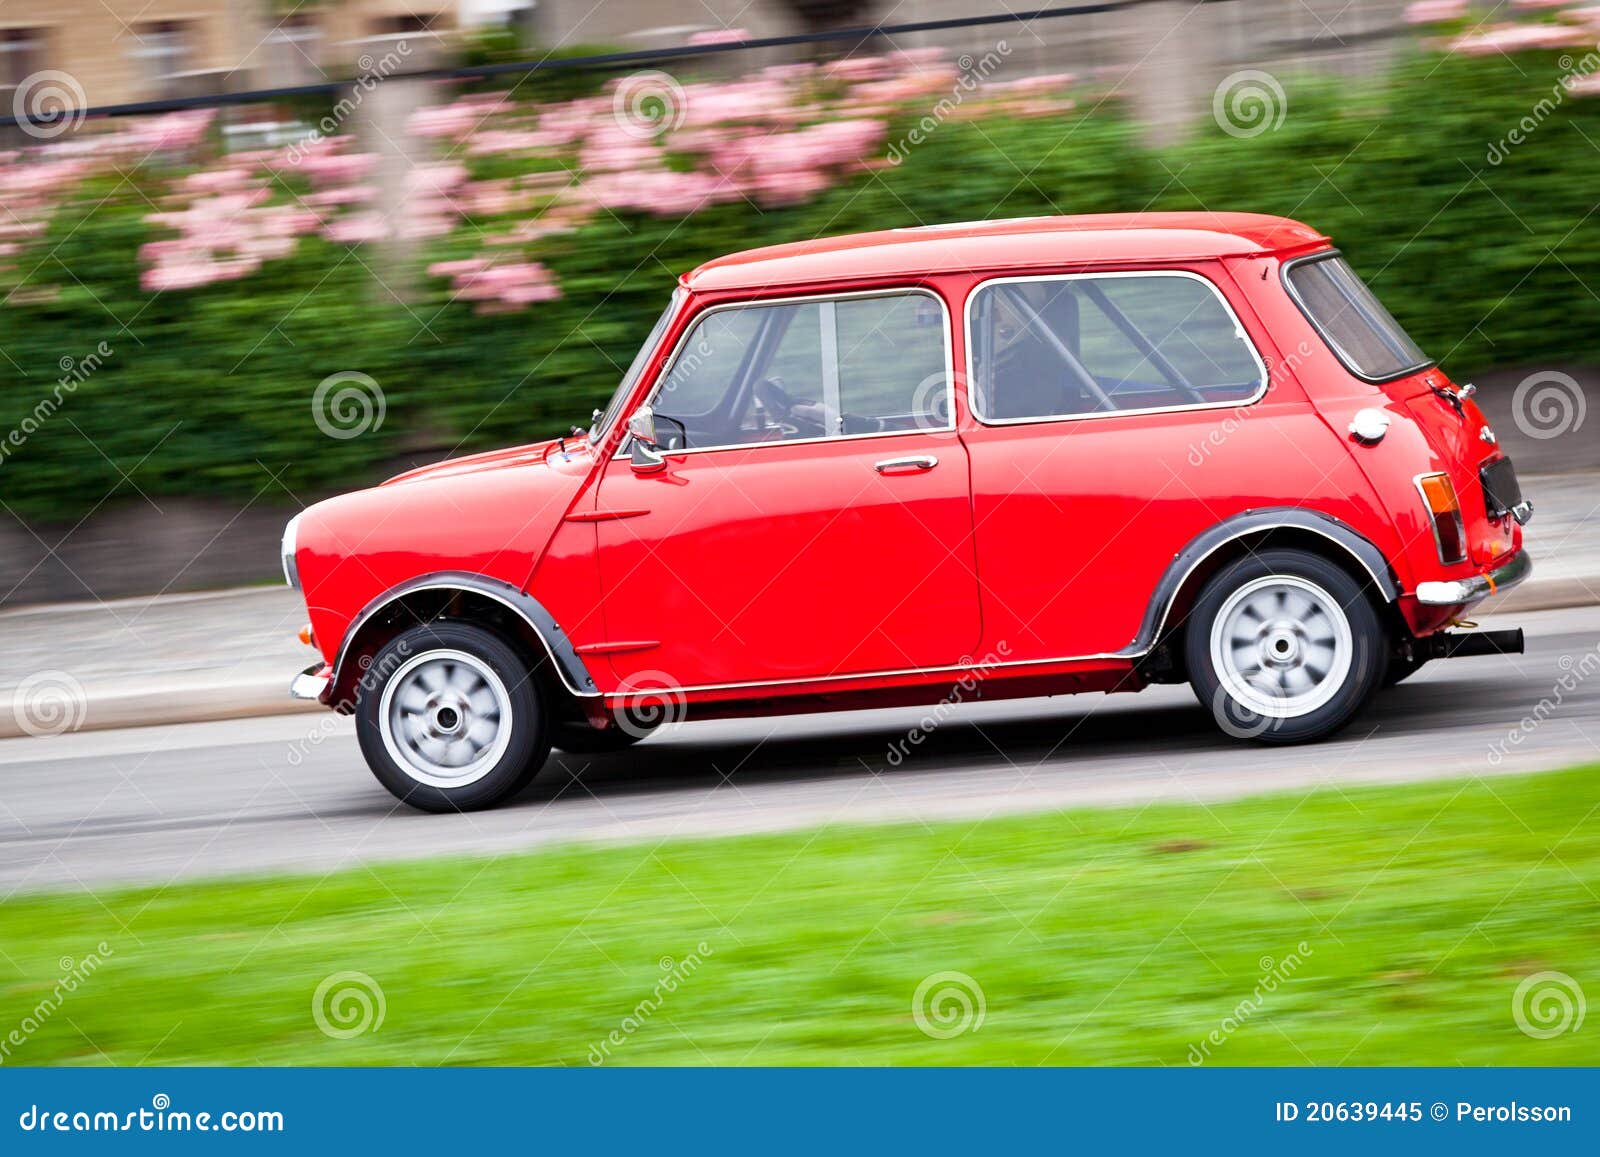 Typisch Slang schoorsteen Kleine rode auto stock afbeelding. Image of snel, stormloop - 20639445